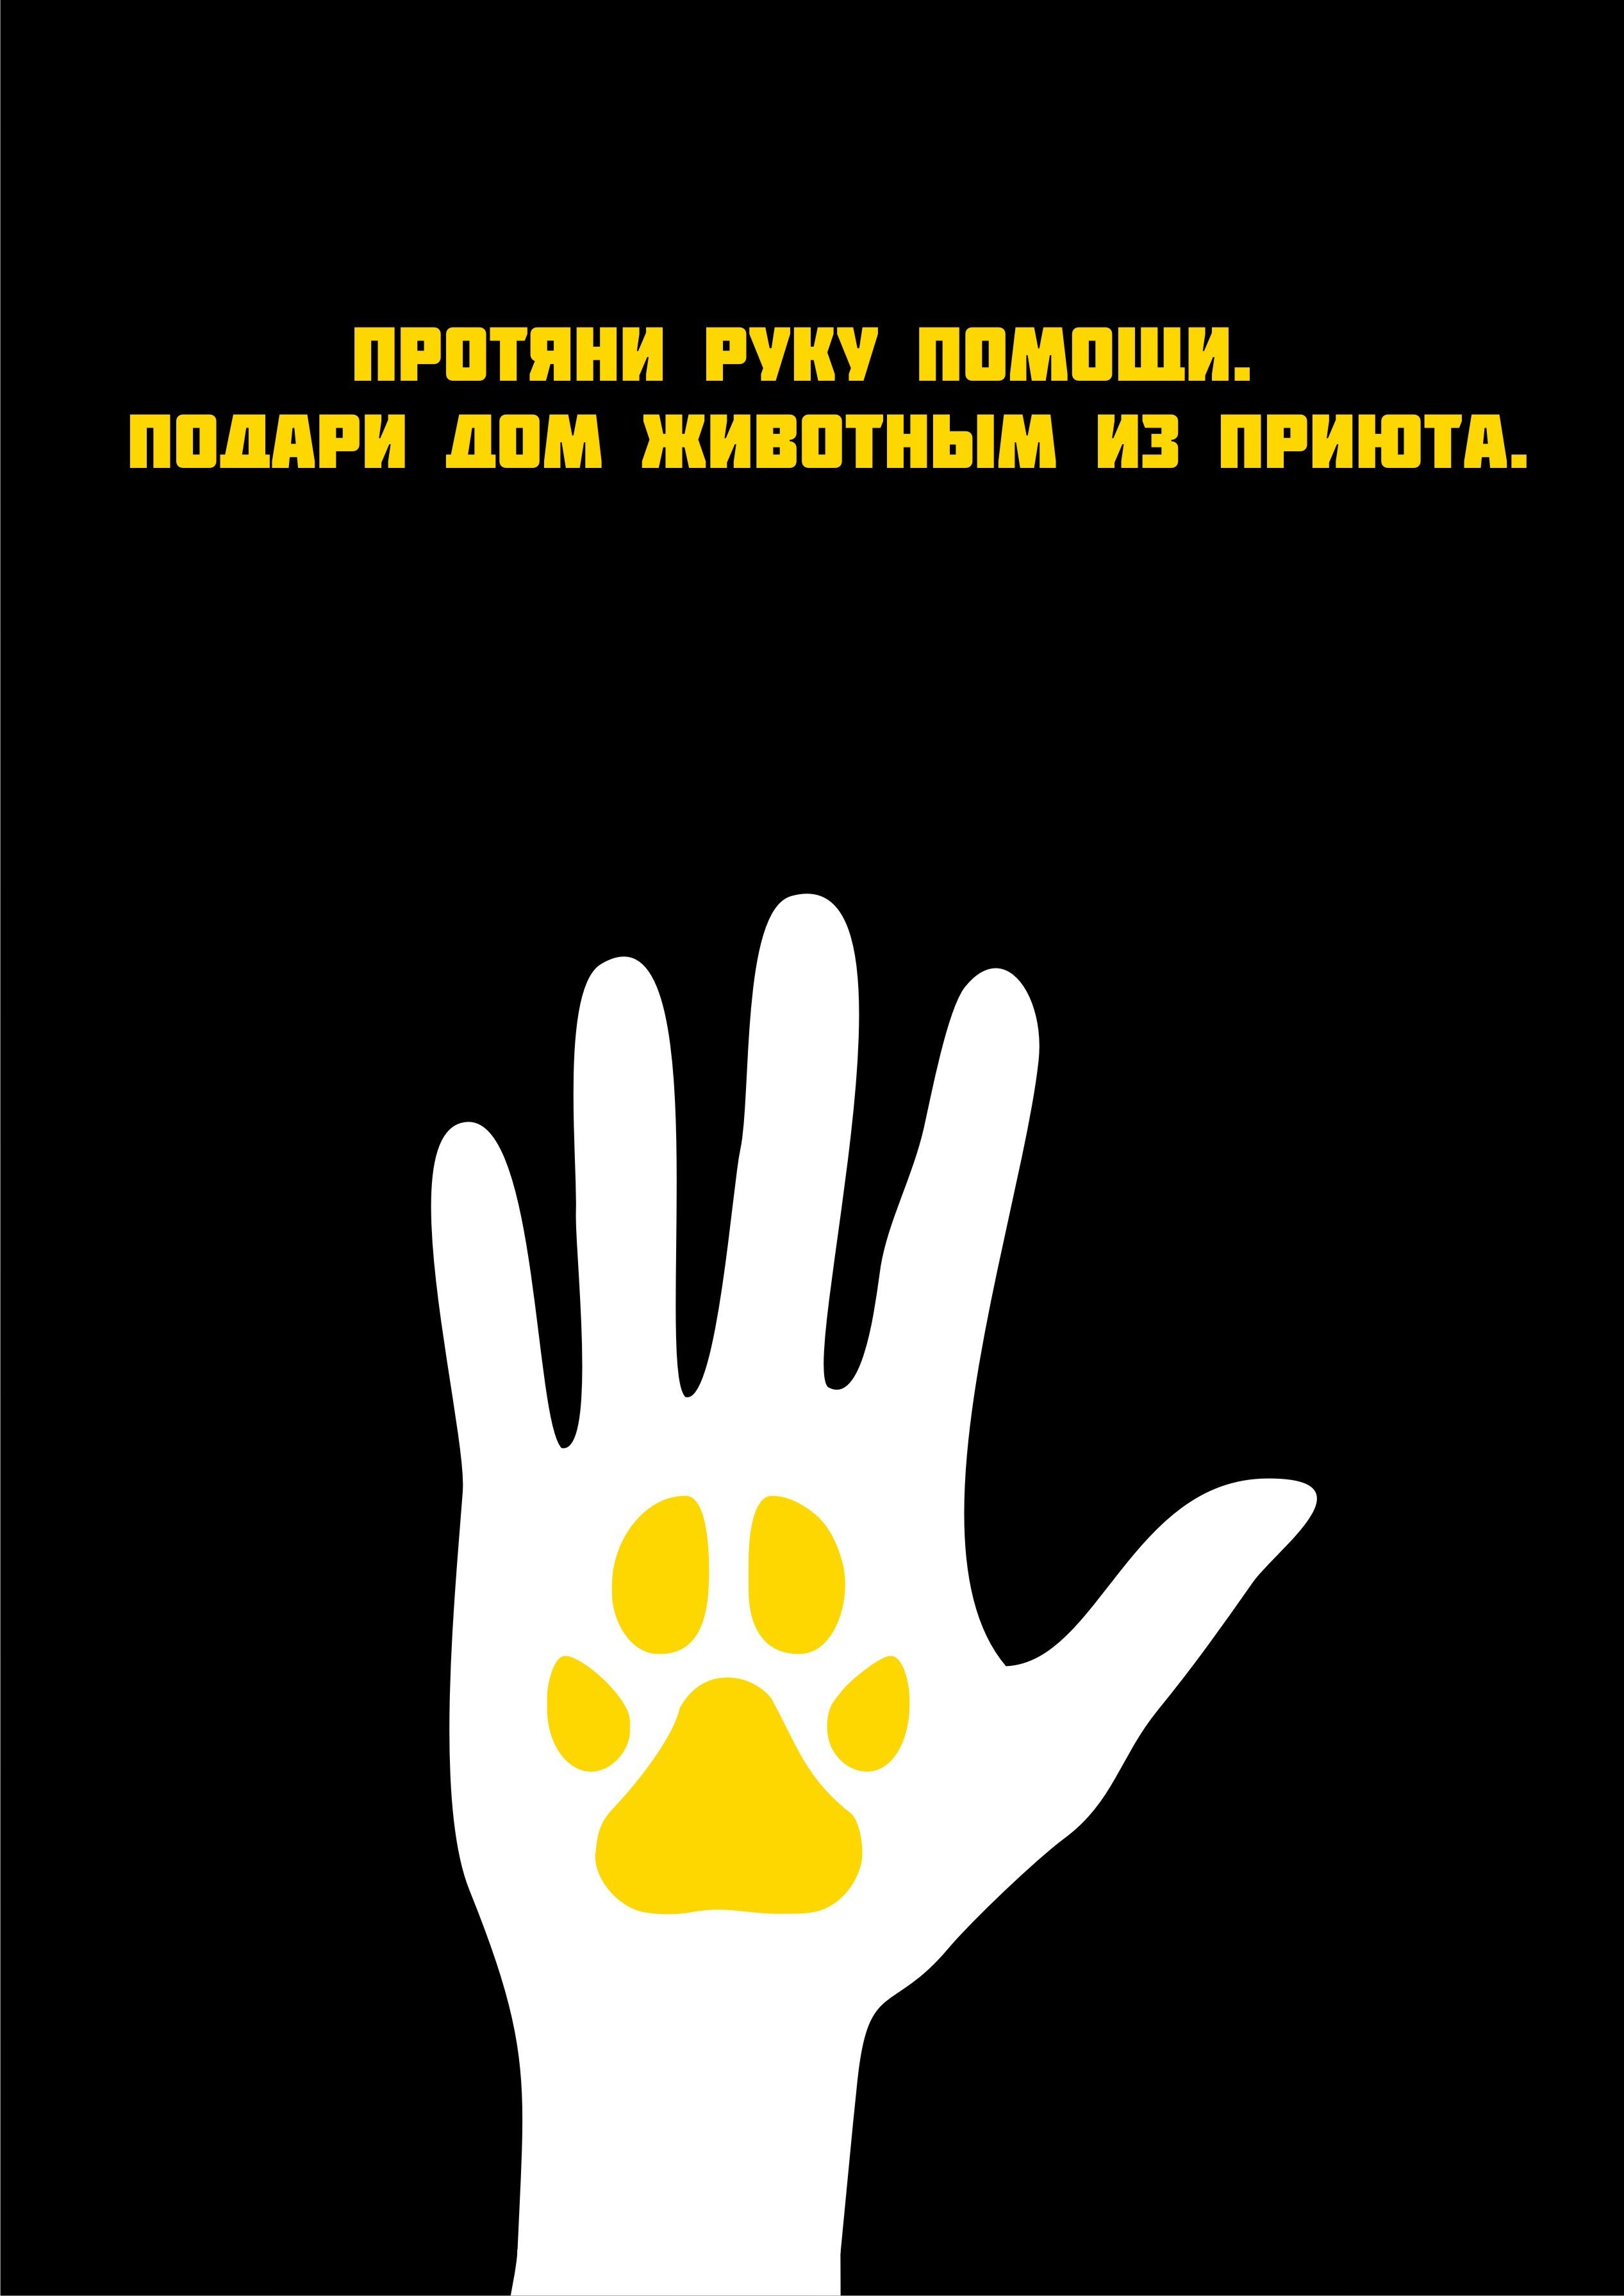 Социальные плакаты на тему защиты животных